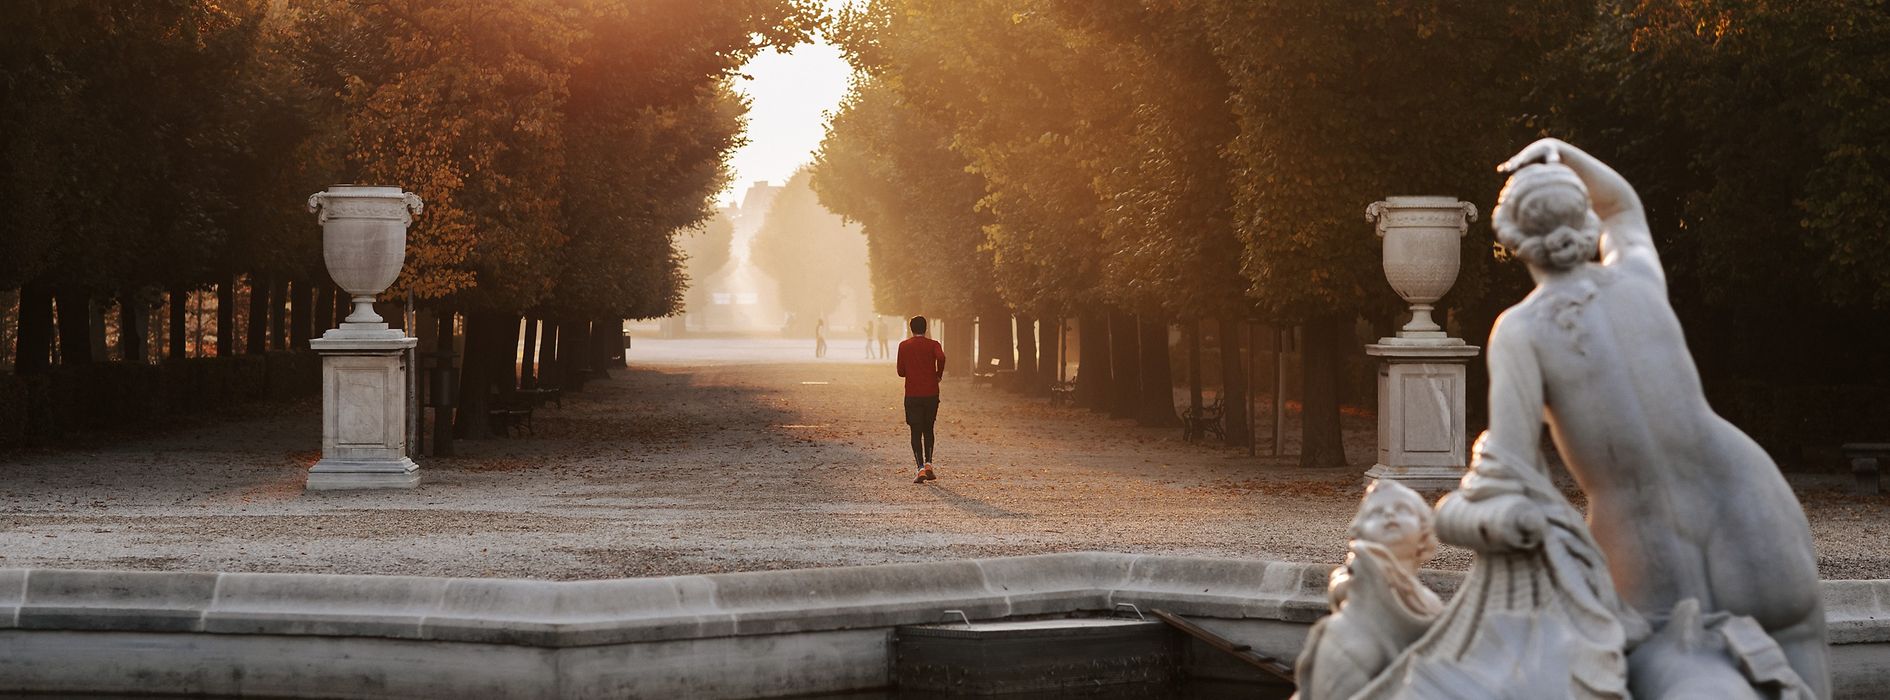 シェーンブルン宮殿庭園の並木道を走る人たち